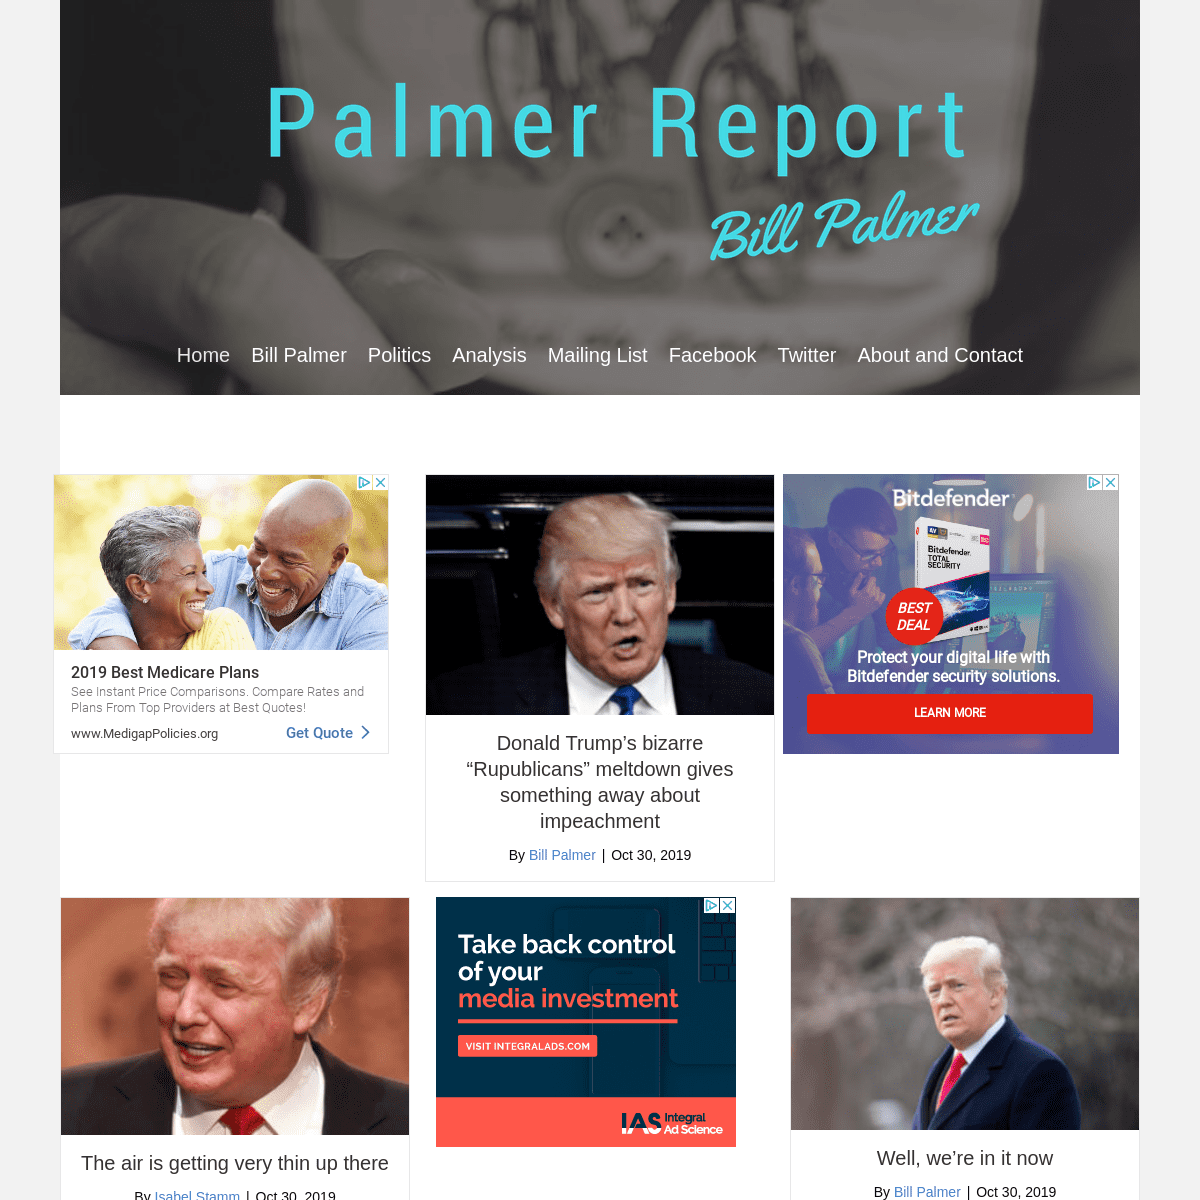 A complete backup of palmerreport.com